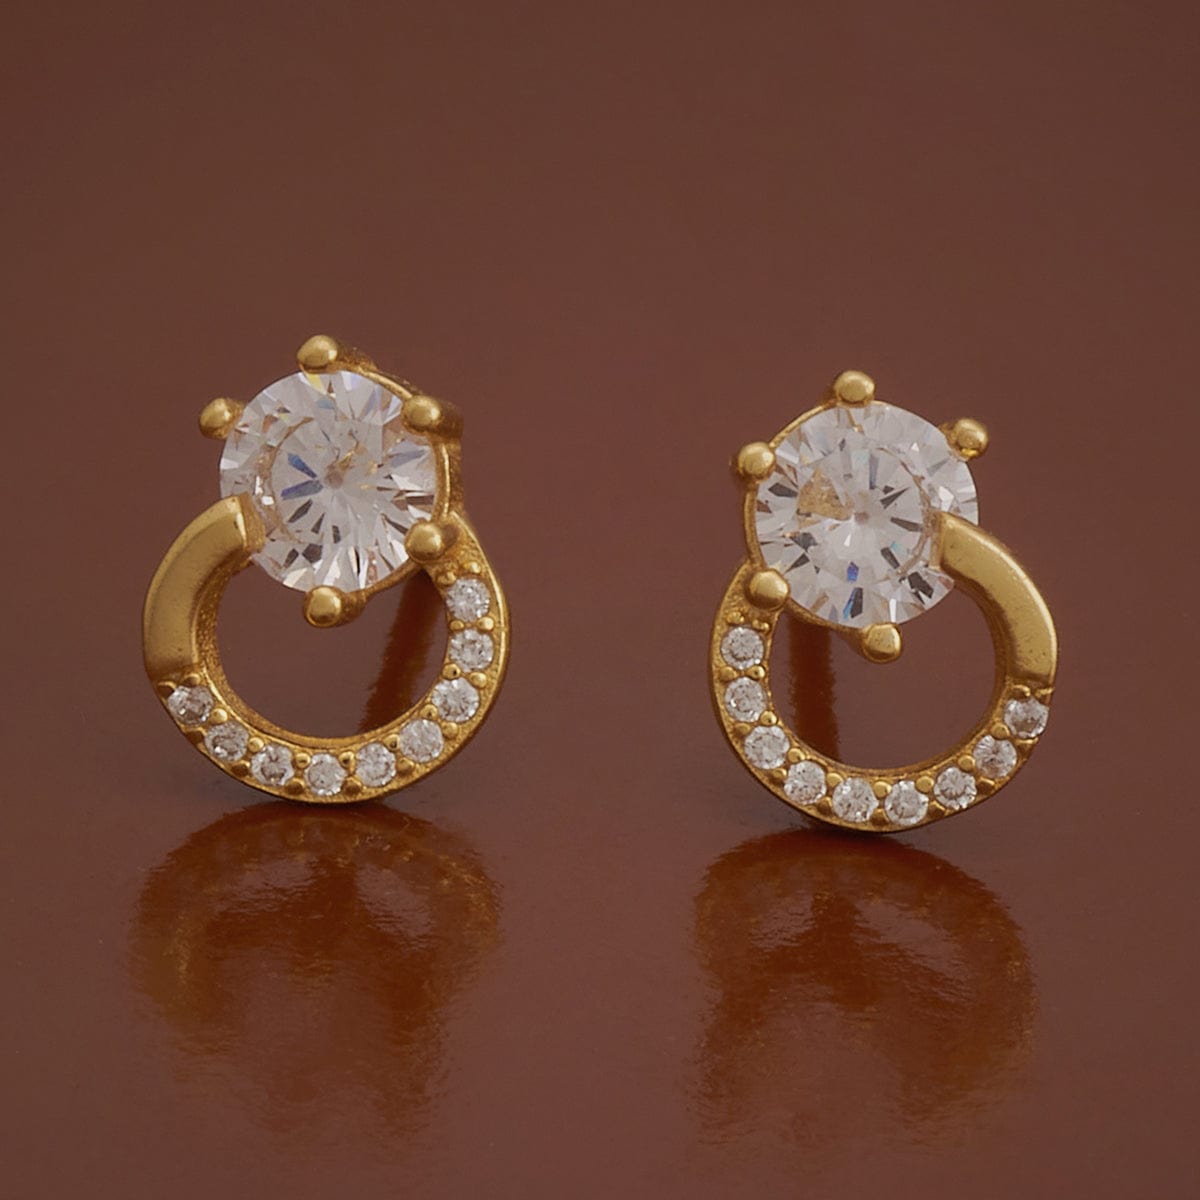 Diamond Stud Earrings for Women - Designer Stud Earrings for Girls - Bonita  Crystal Stud Earrings by Blingvine